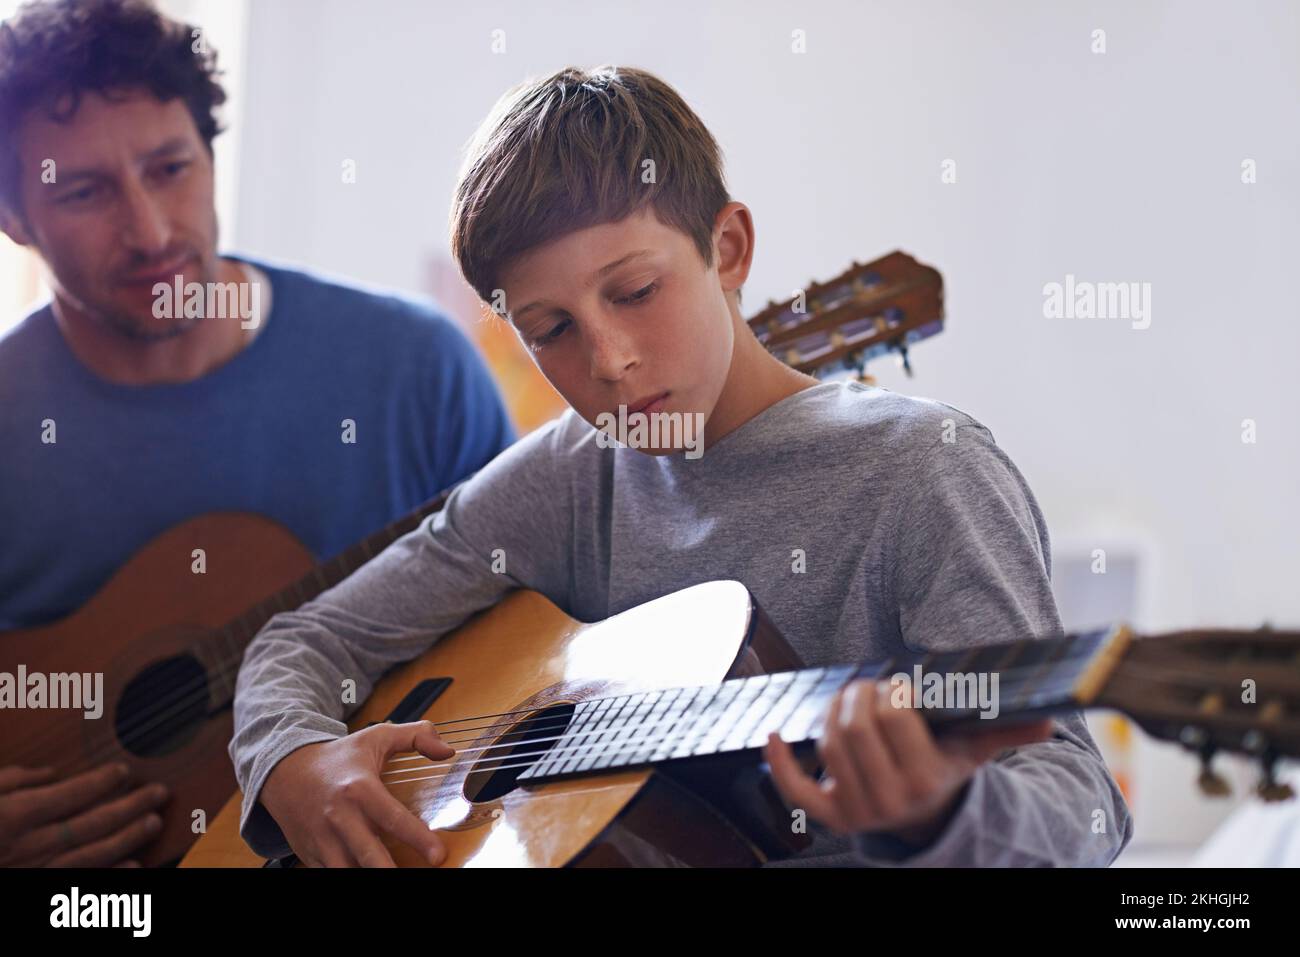 Die Fertigkeiten weitergeben. Ein Junge, der Gitarre spielt, von seinem Vater. Stockfoto